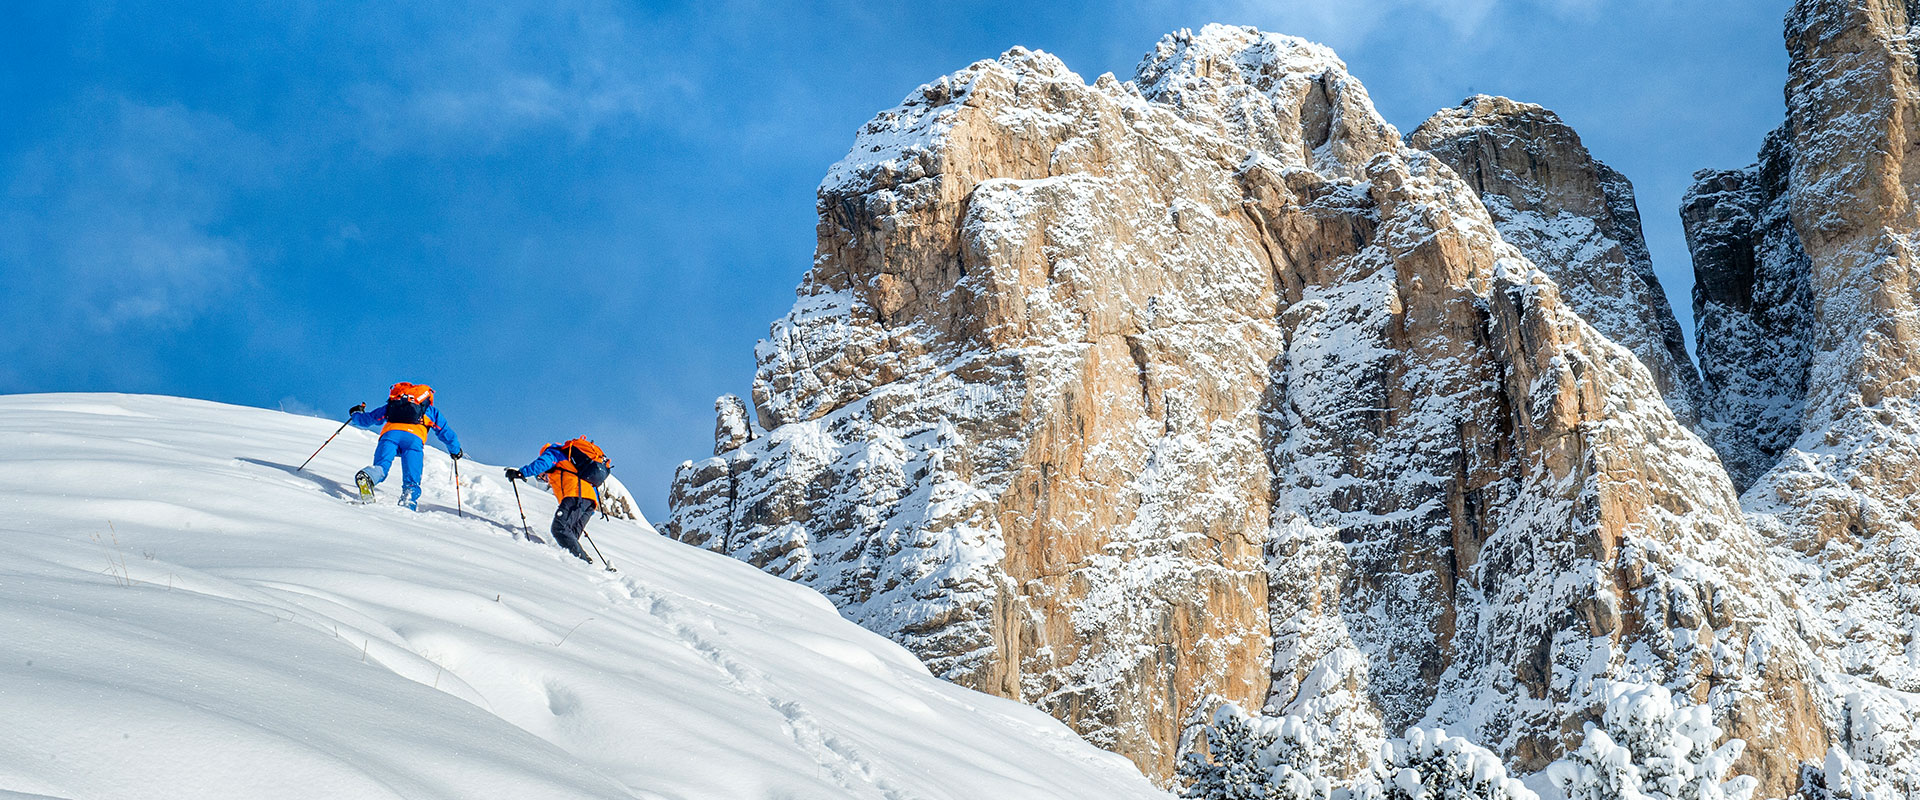 Skidurchquerung Dolomiten | Alpine School CATORES - Val Gardena / South ...